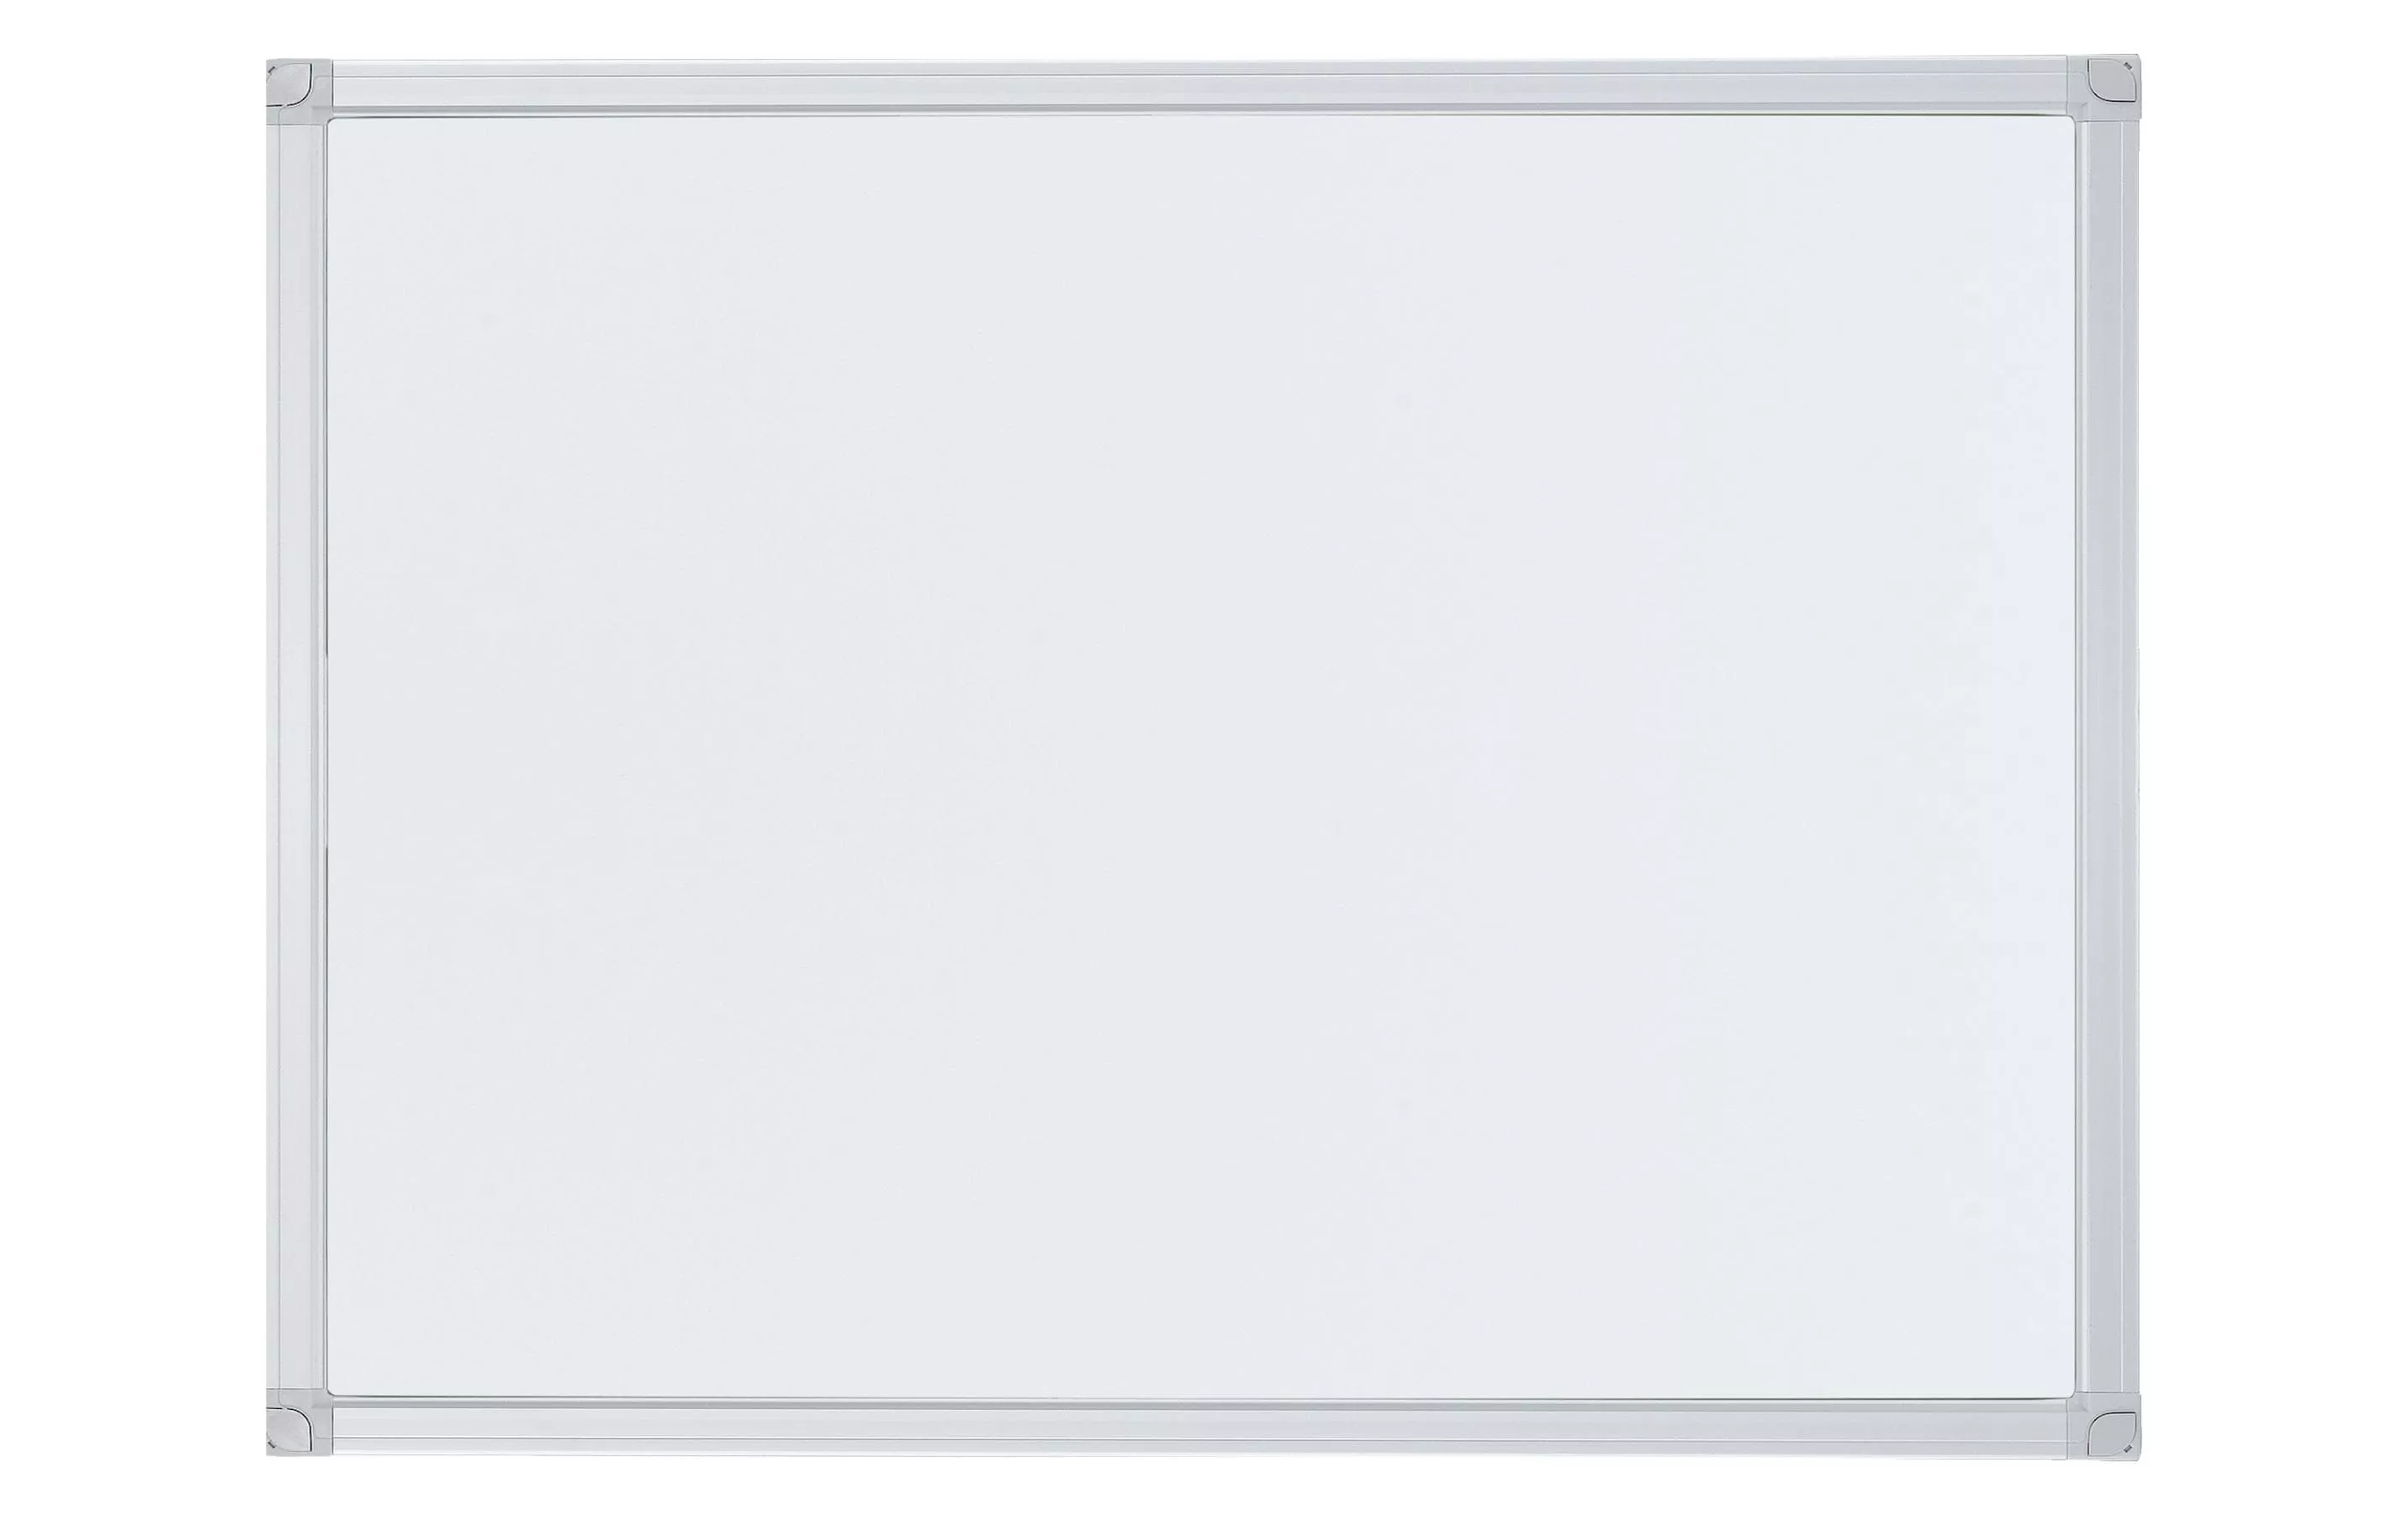 Tableau blanc magnétique X-tra!Line 45 cm x 60 cm, Blanc